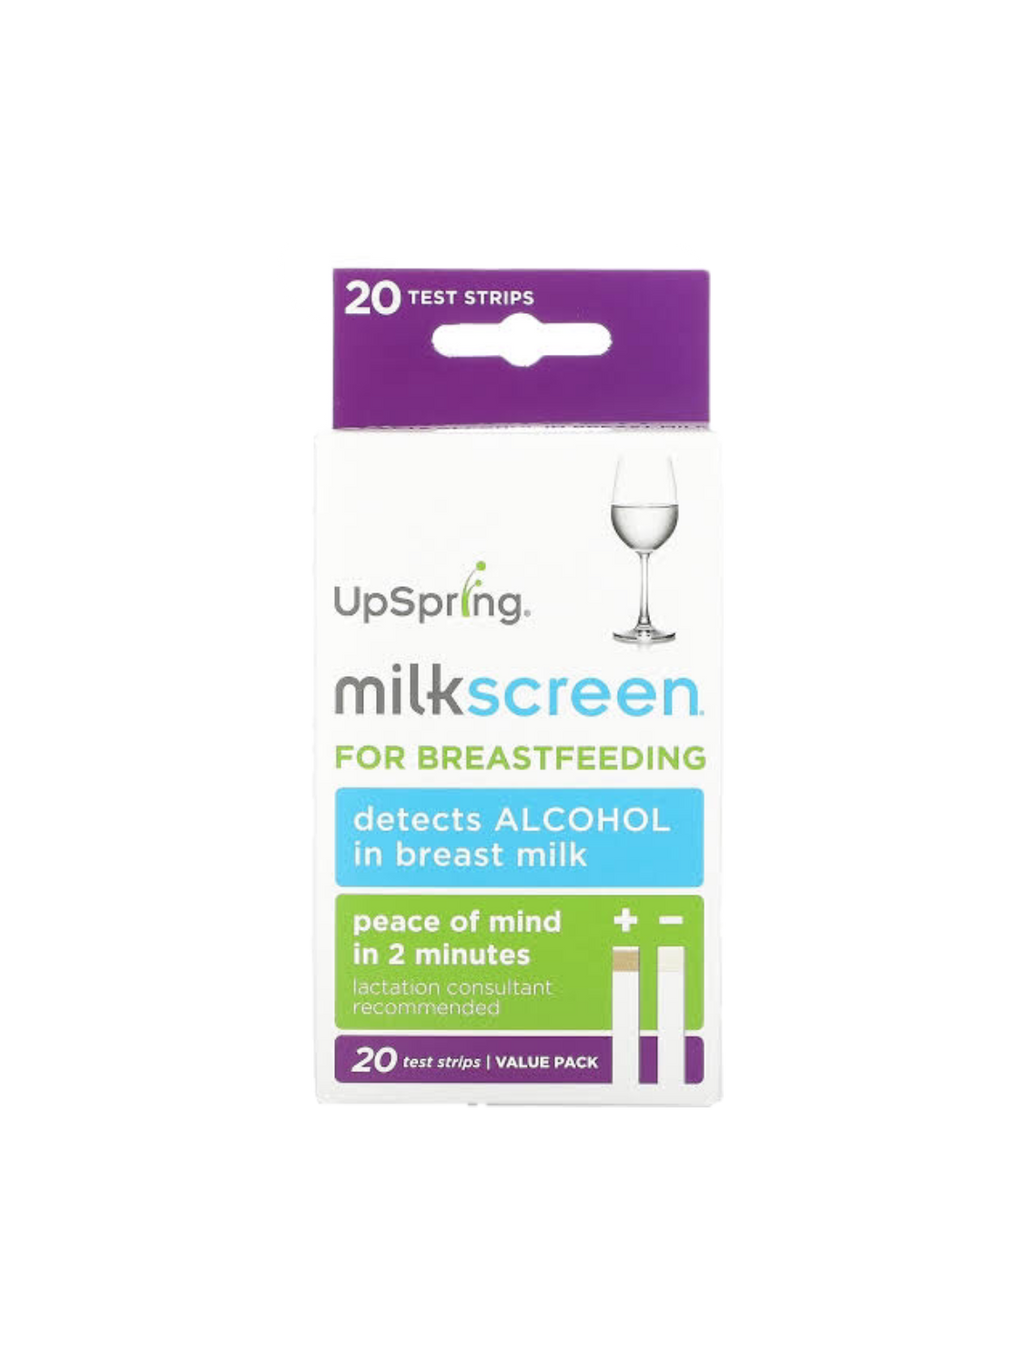 Upspring Milkscreen for Breastfeeding